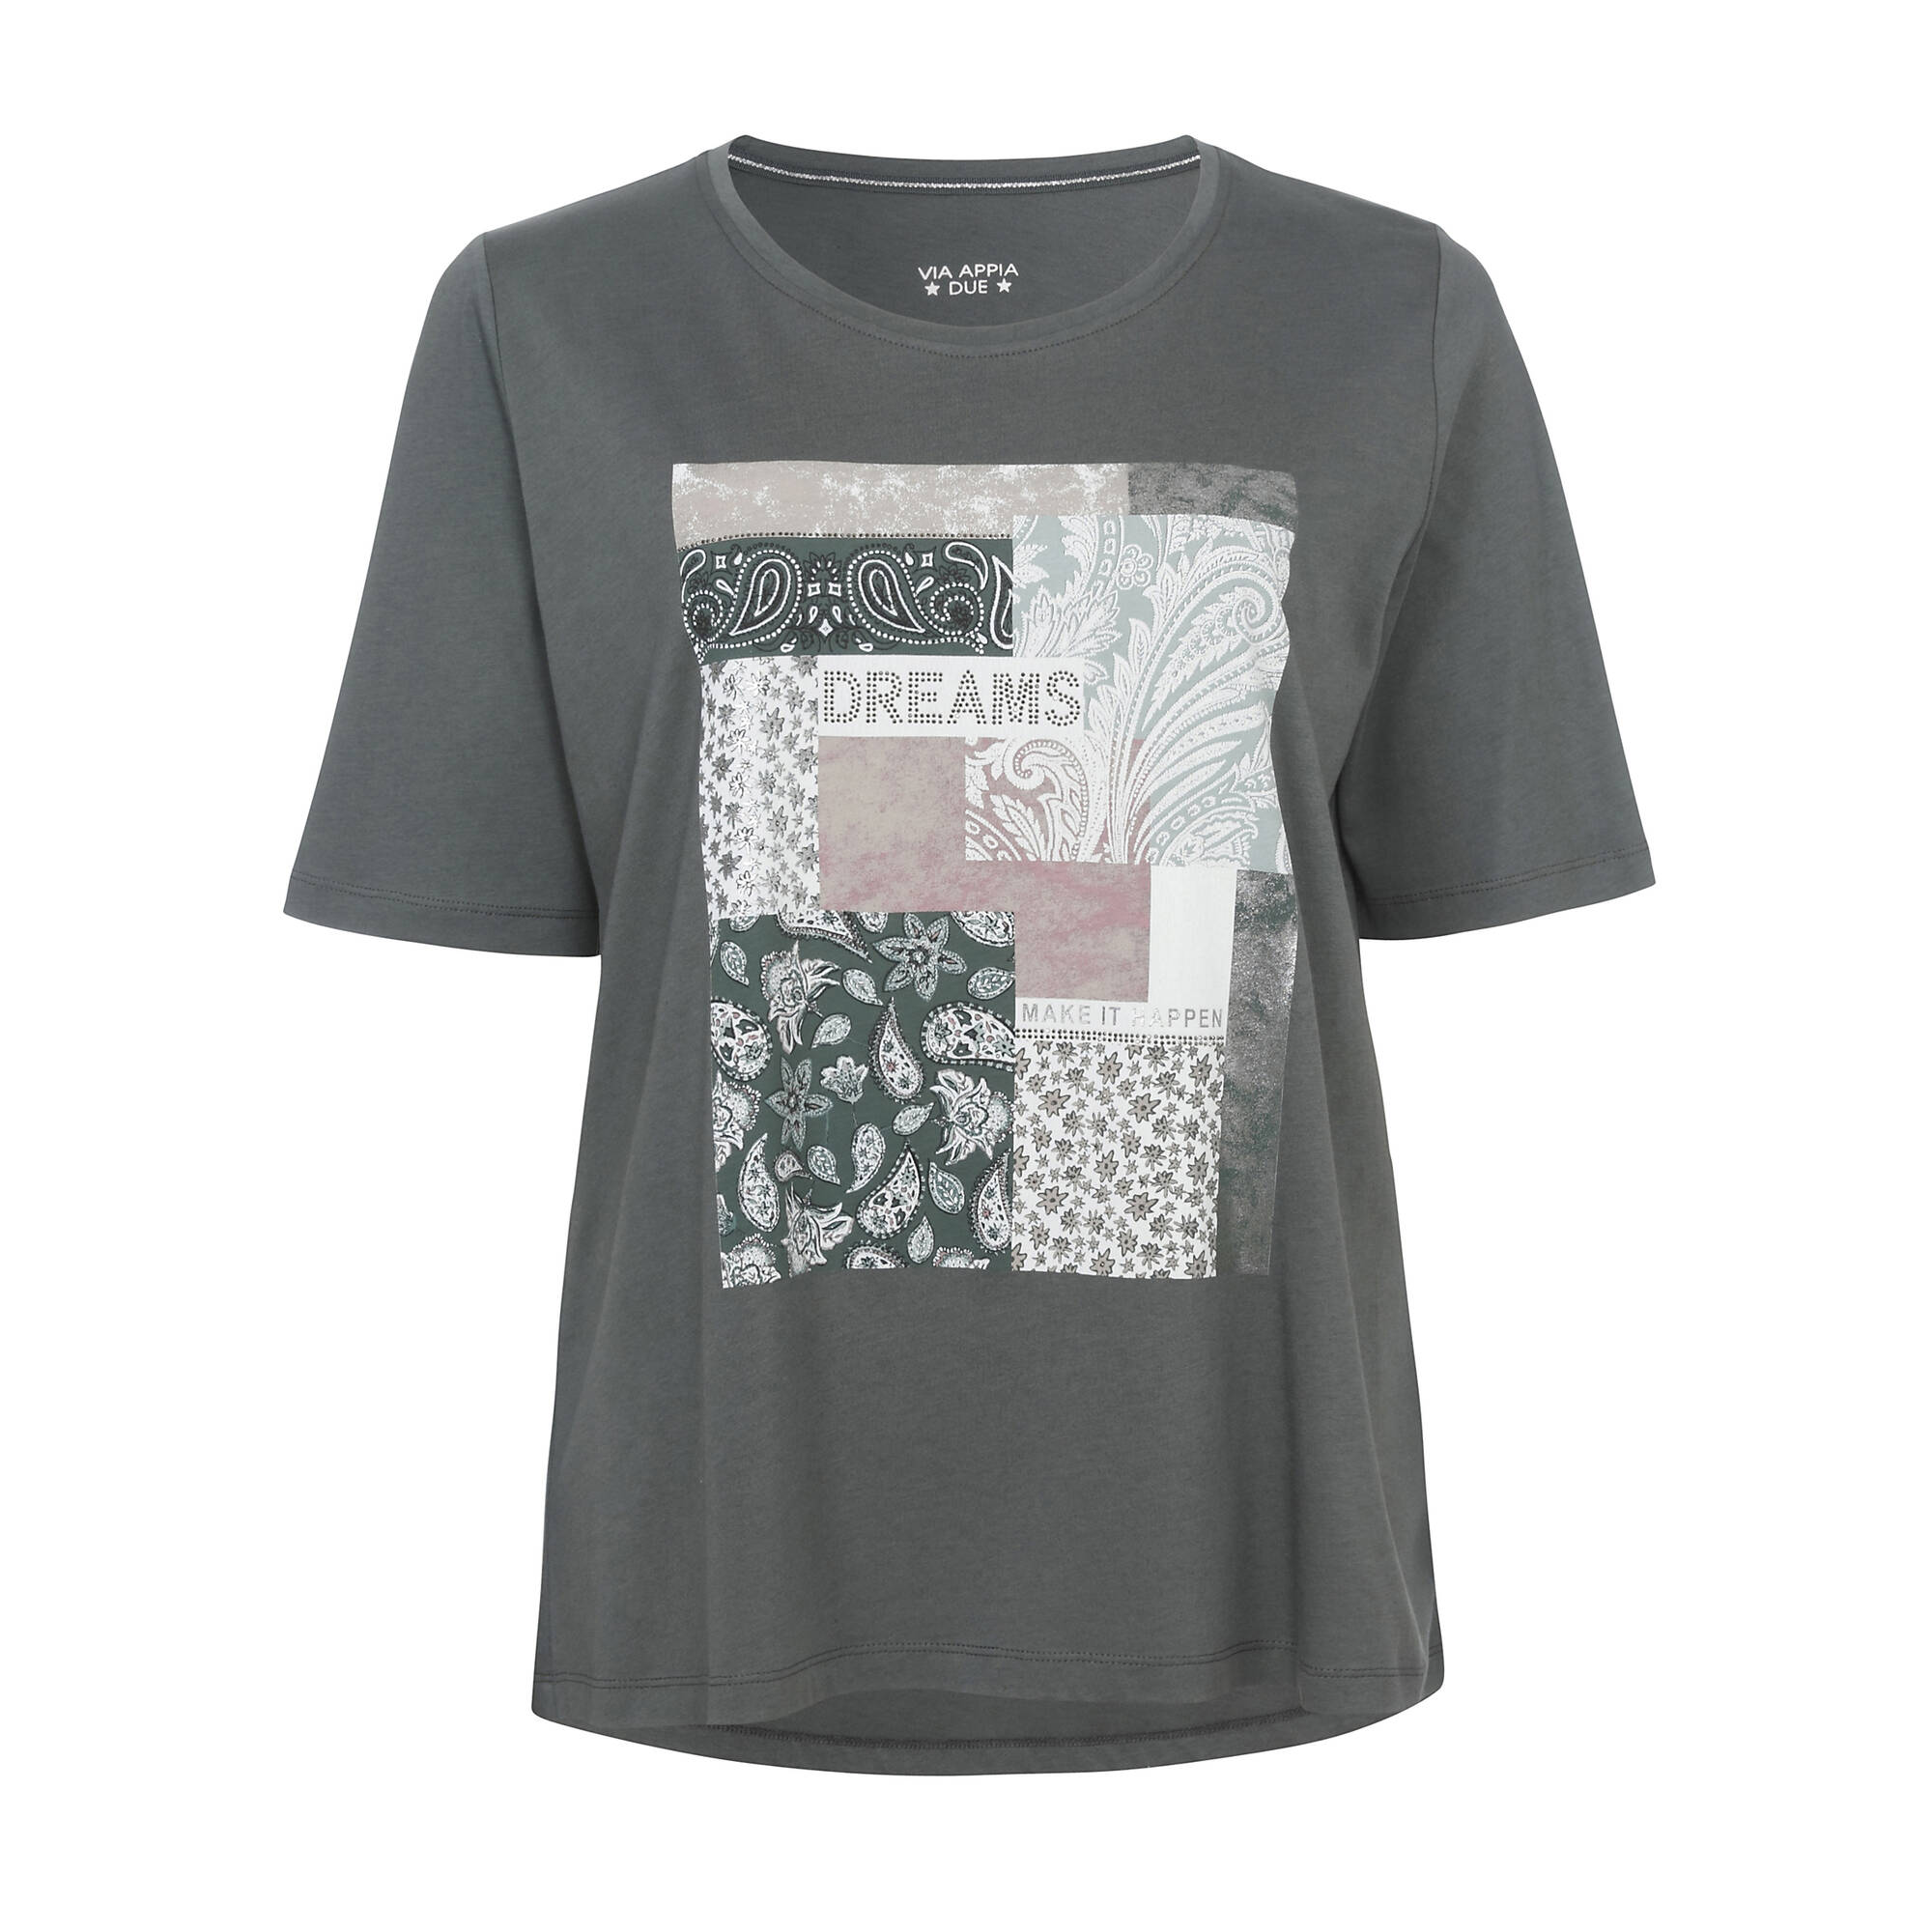 Feminines T-Shirt mit Strass-Steinen